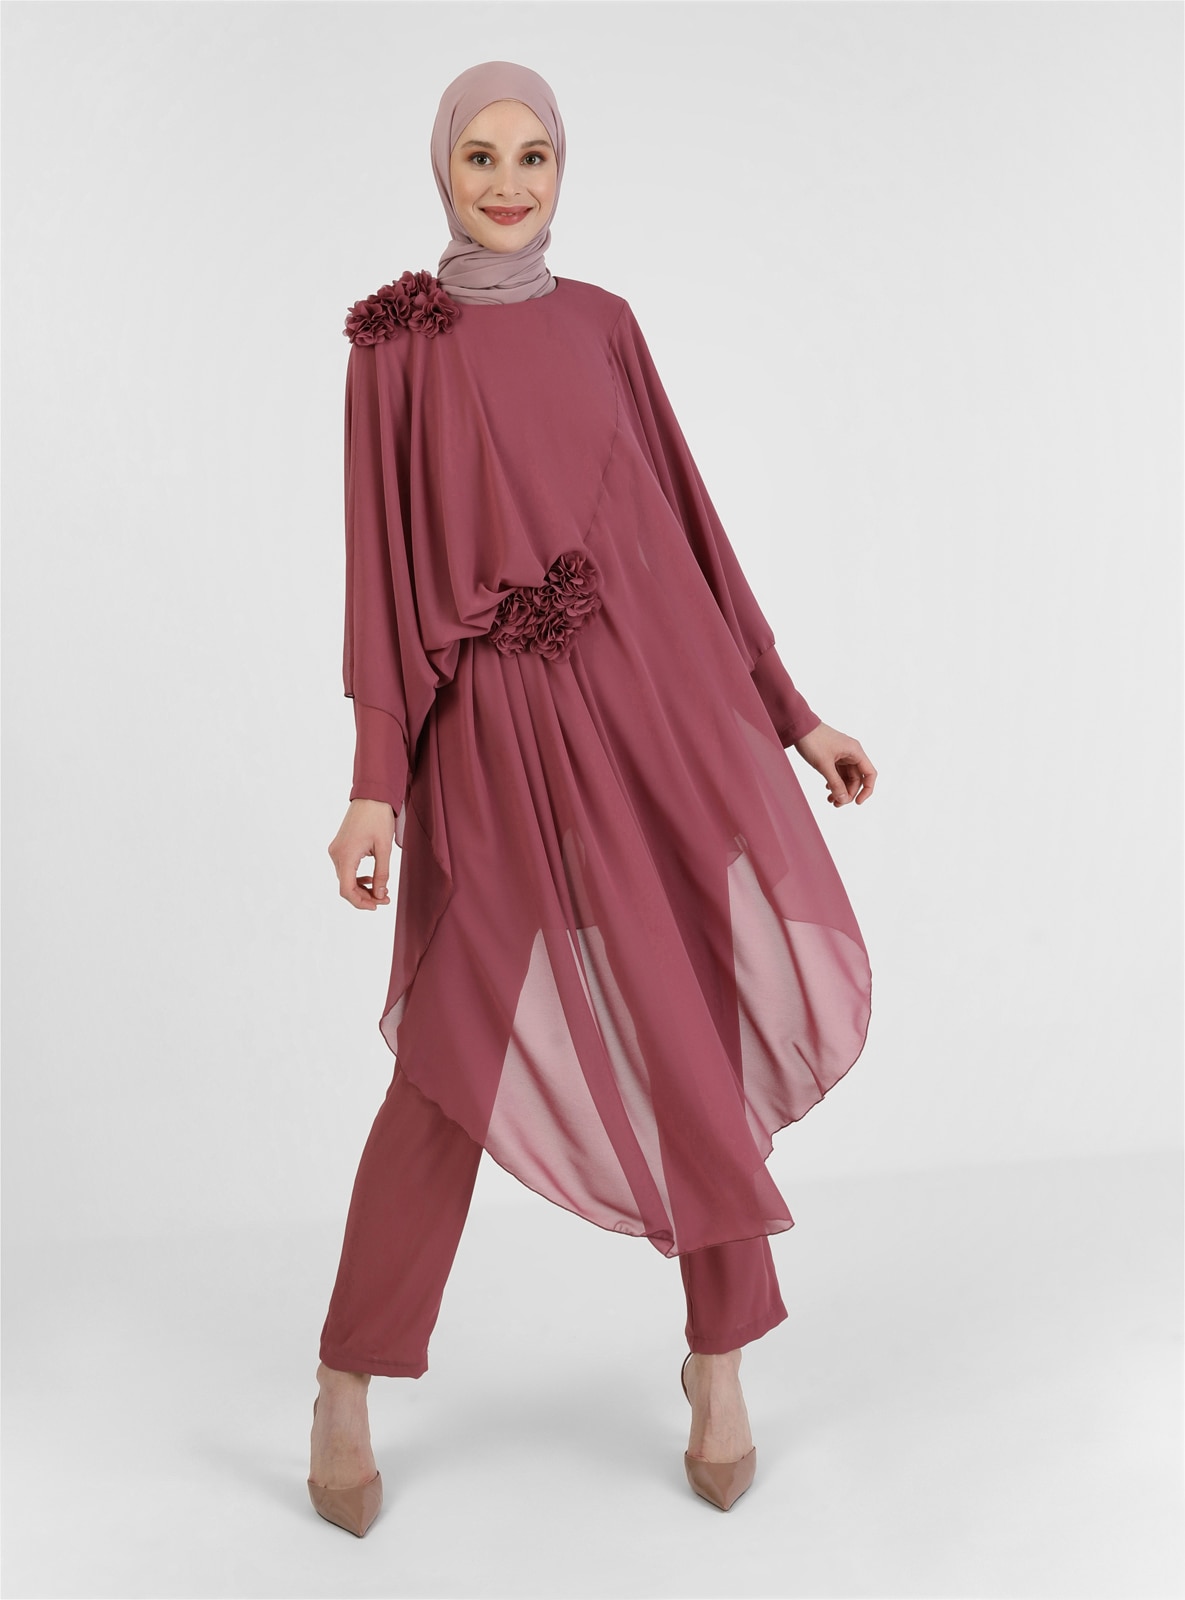 Floral Detailed Evening Dress Jumpsuit Rose Color